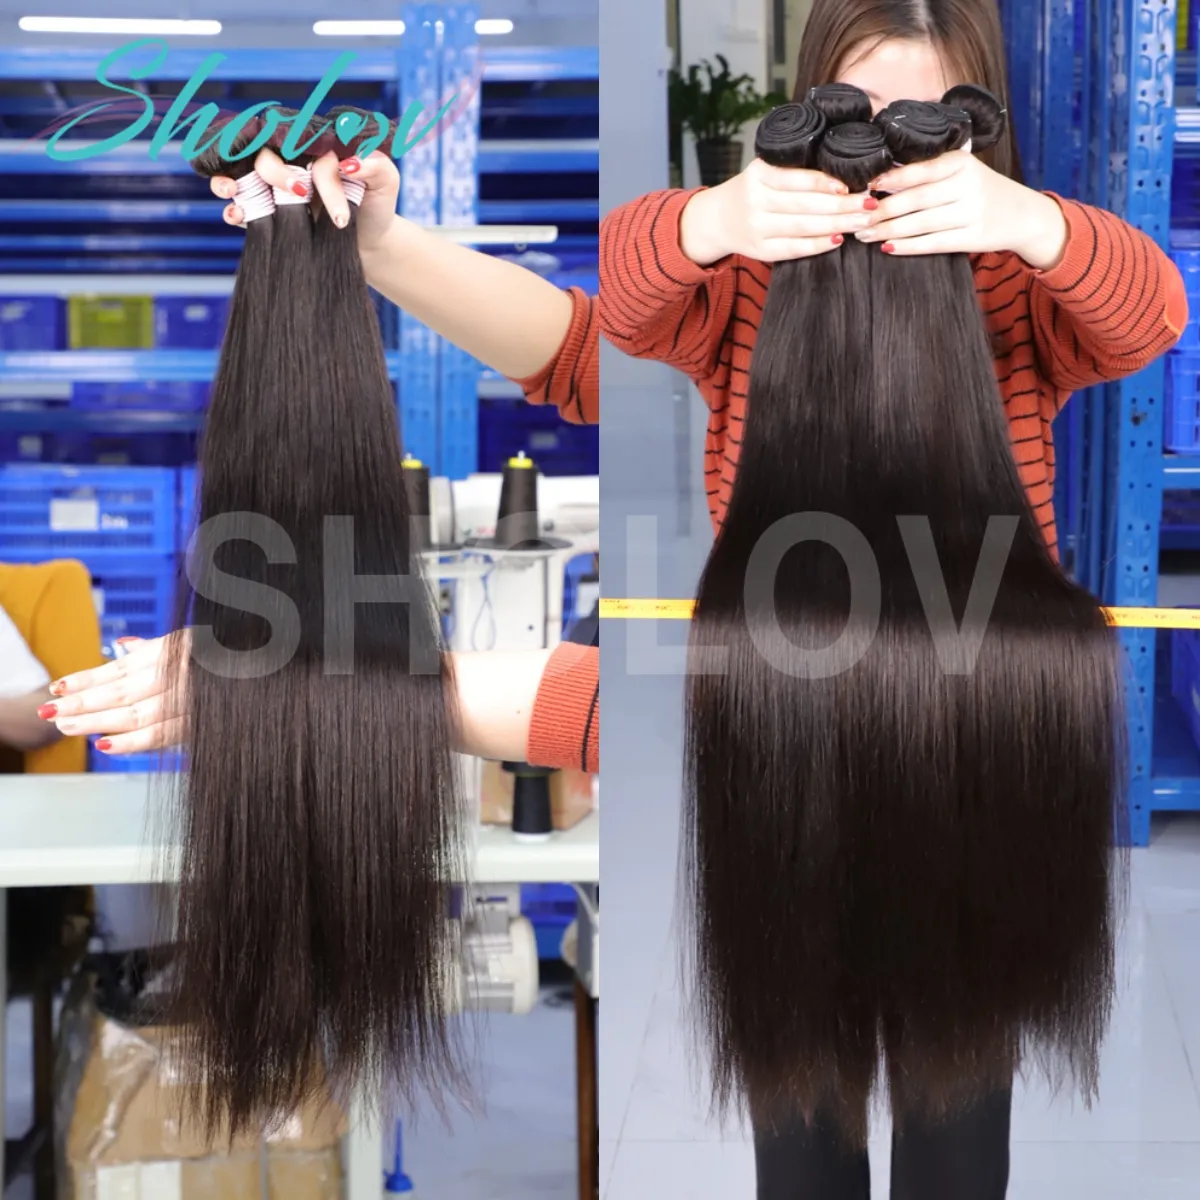 Китайские натуральные роскошные волосы для наращивания, бразильские человеческие волосы для наращивания, оптовая продажа, бразильские волосы для наращивания, Южная Африка